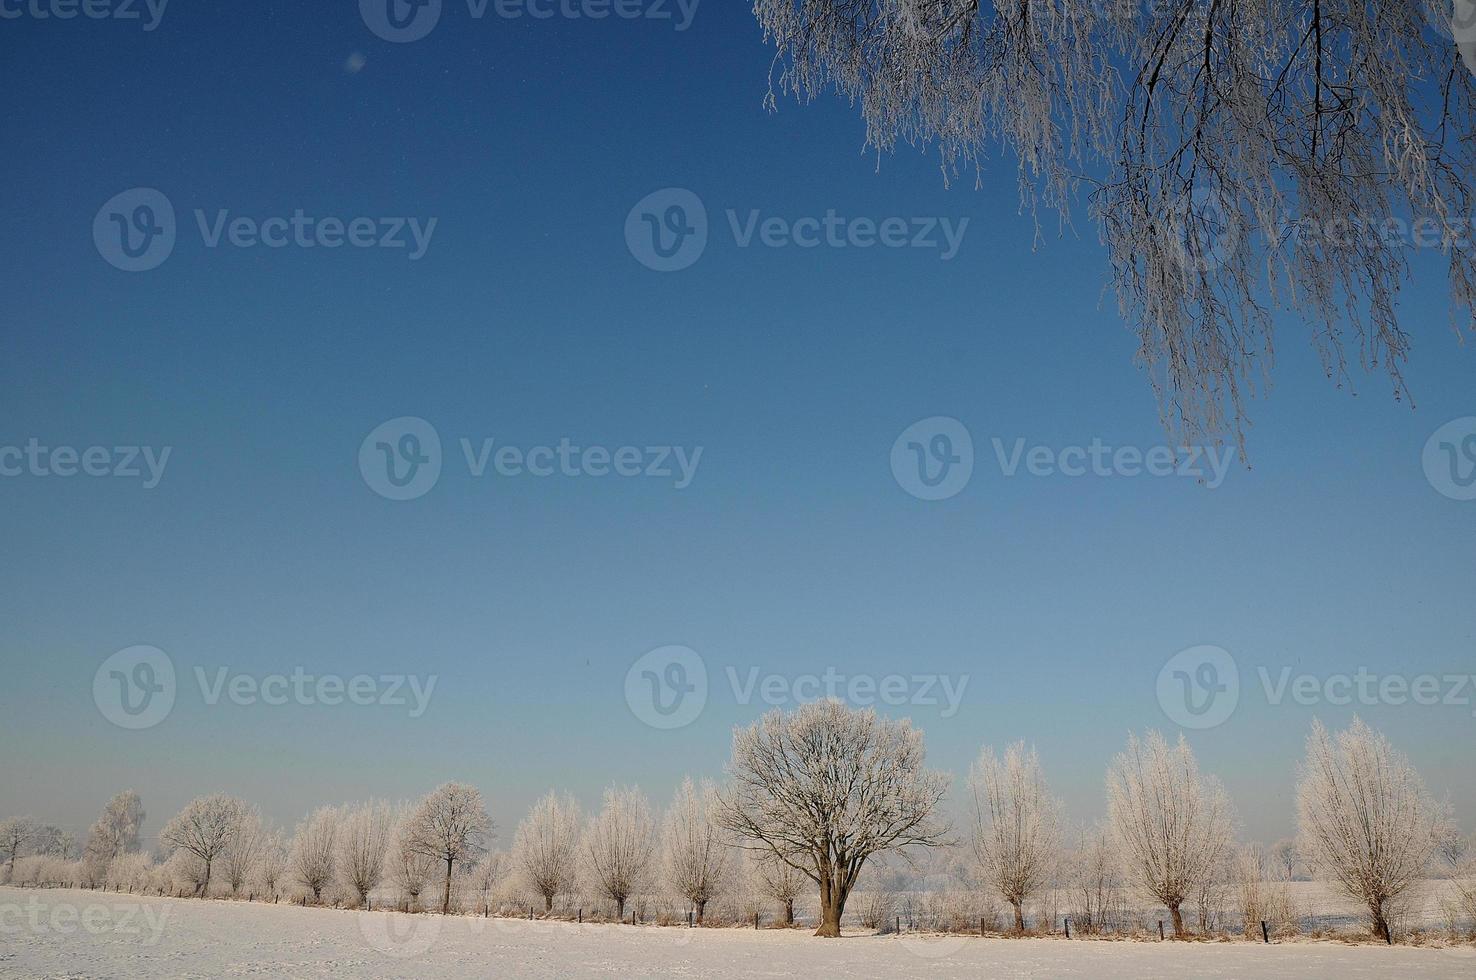 vinter- tid i Westfalen foto